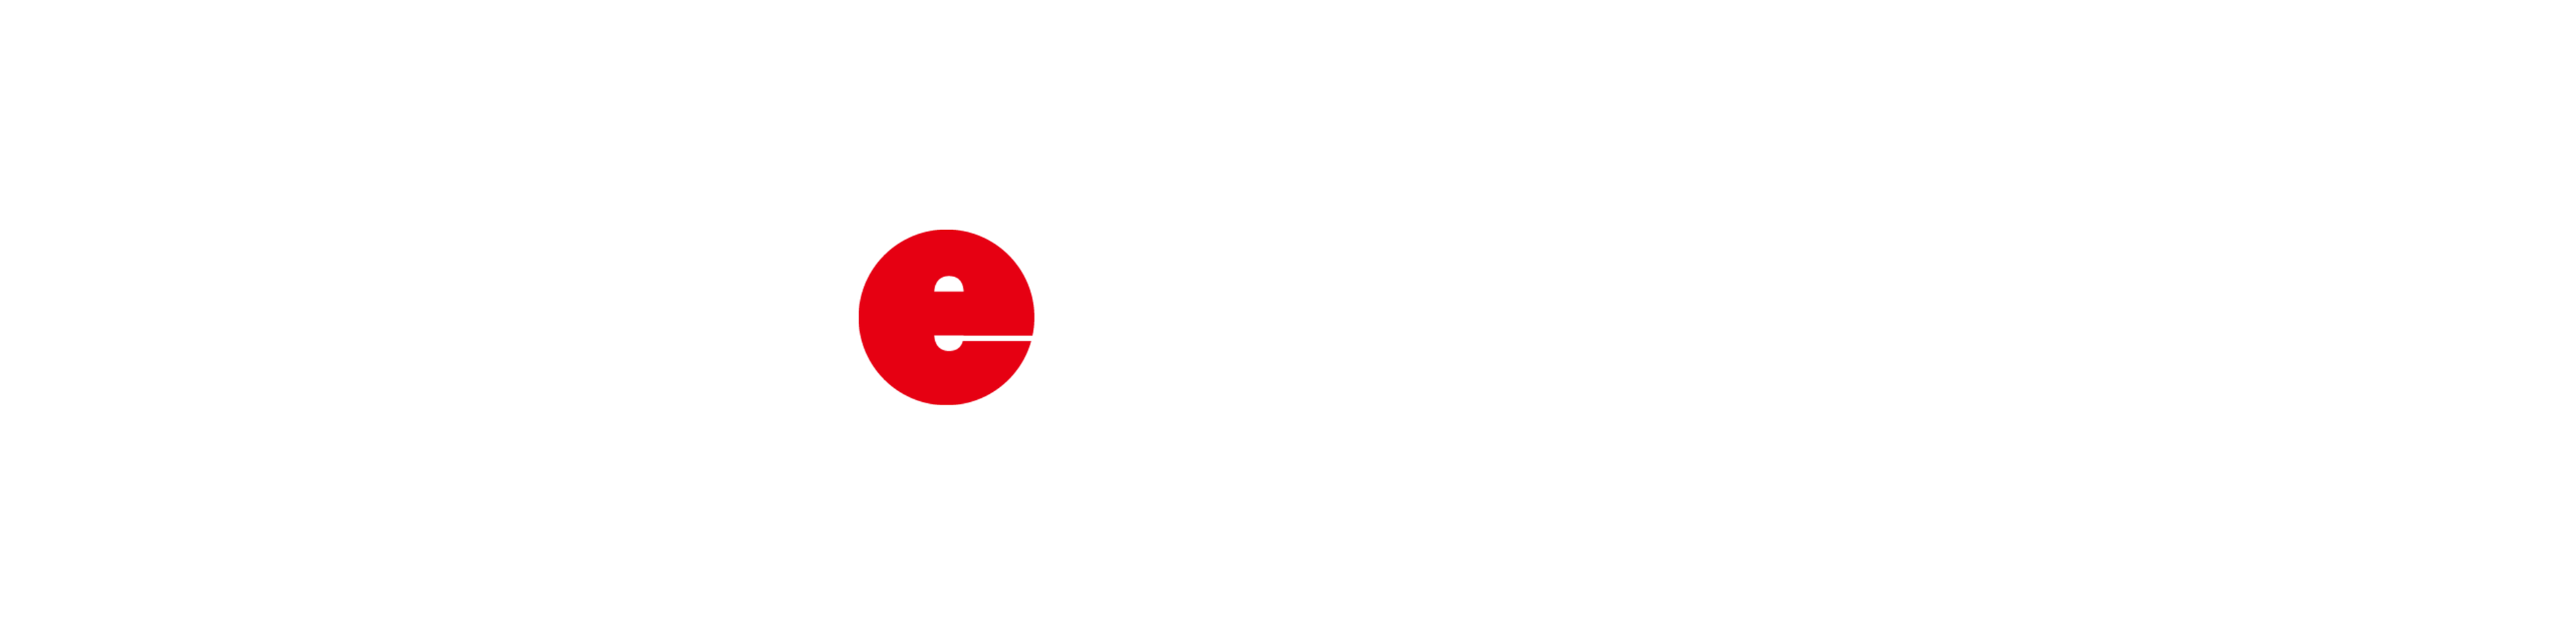 evoke81